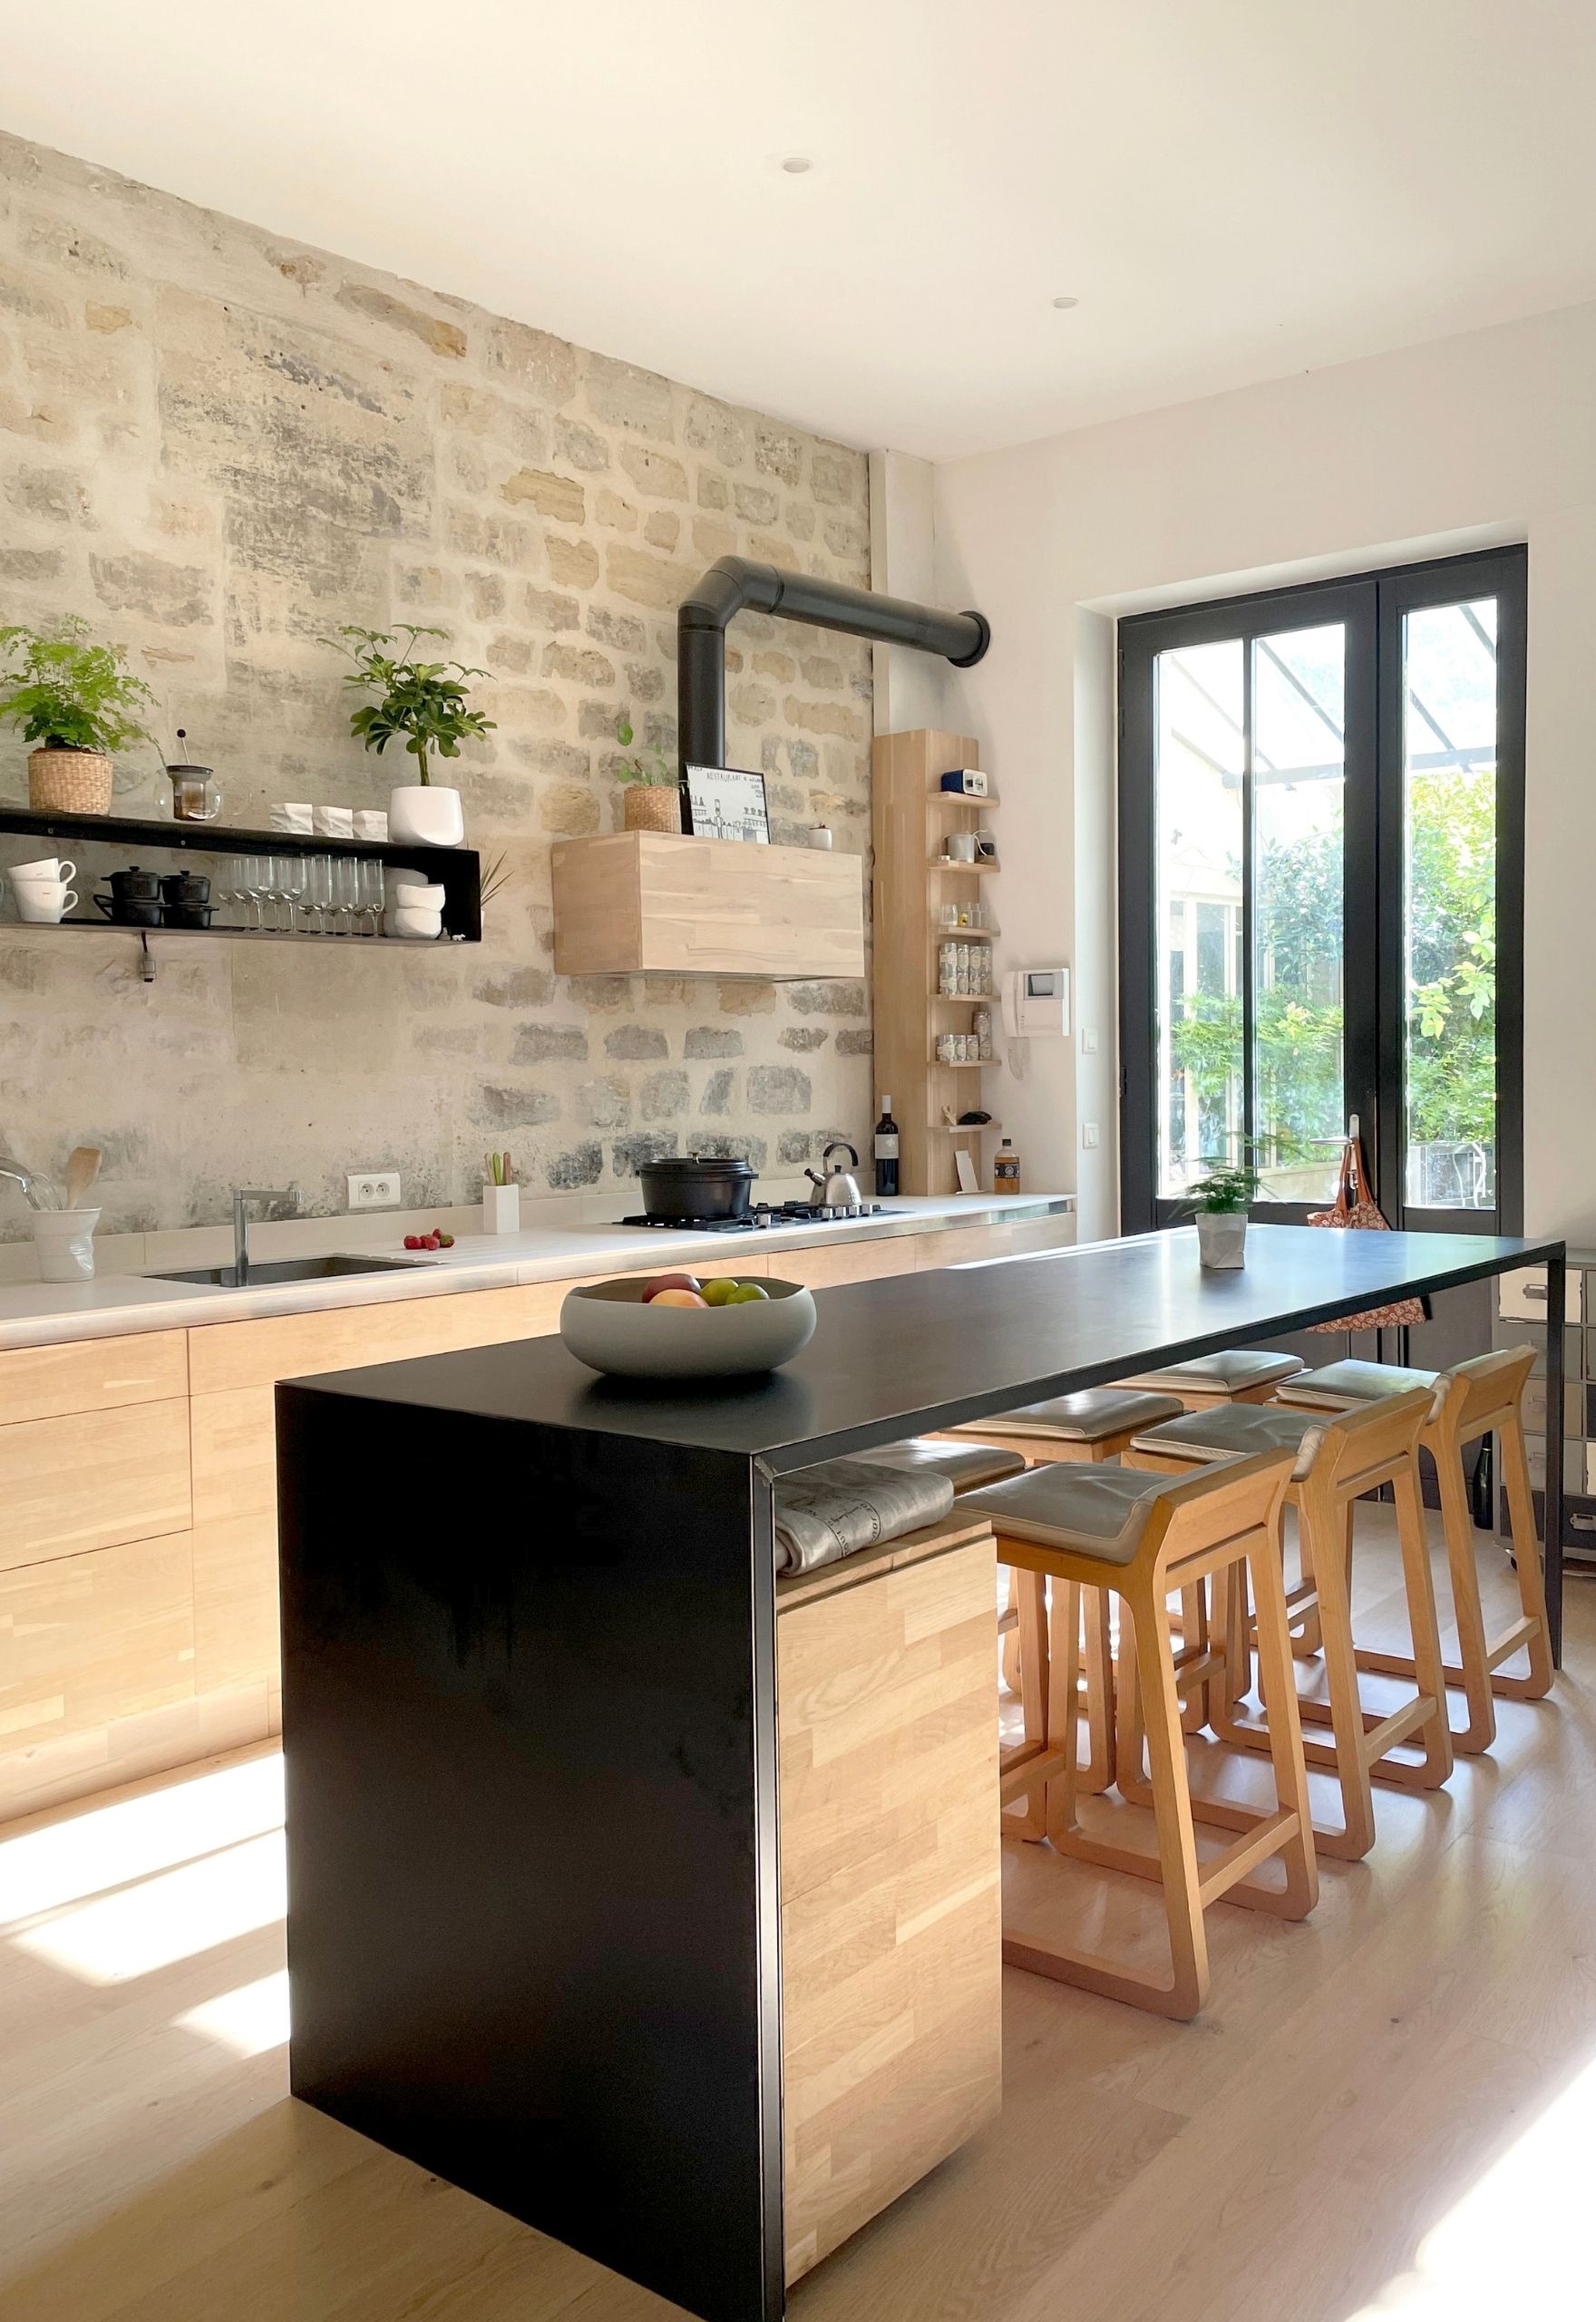 Rénovation maison Saint-Germain-en-Laye - cuisine bois acier